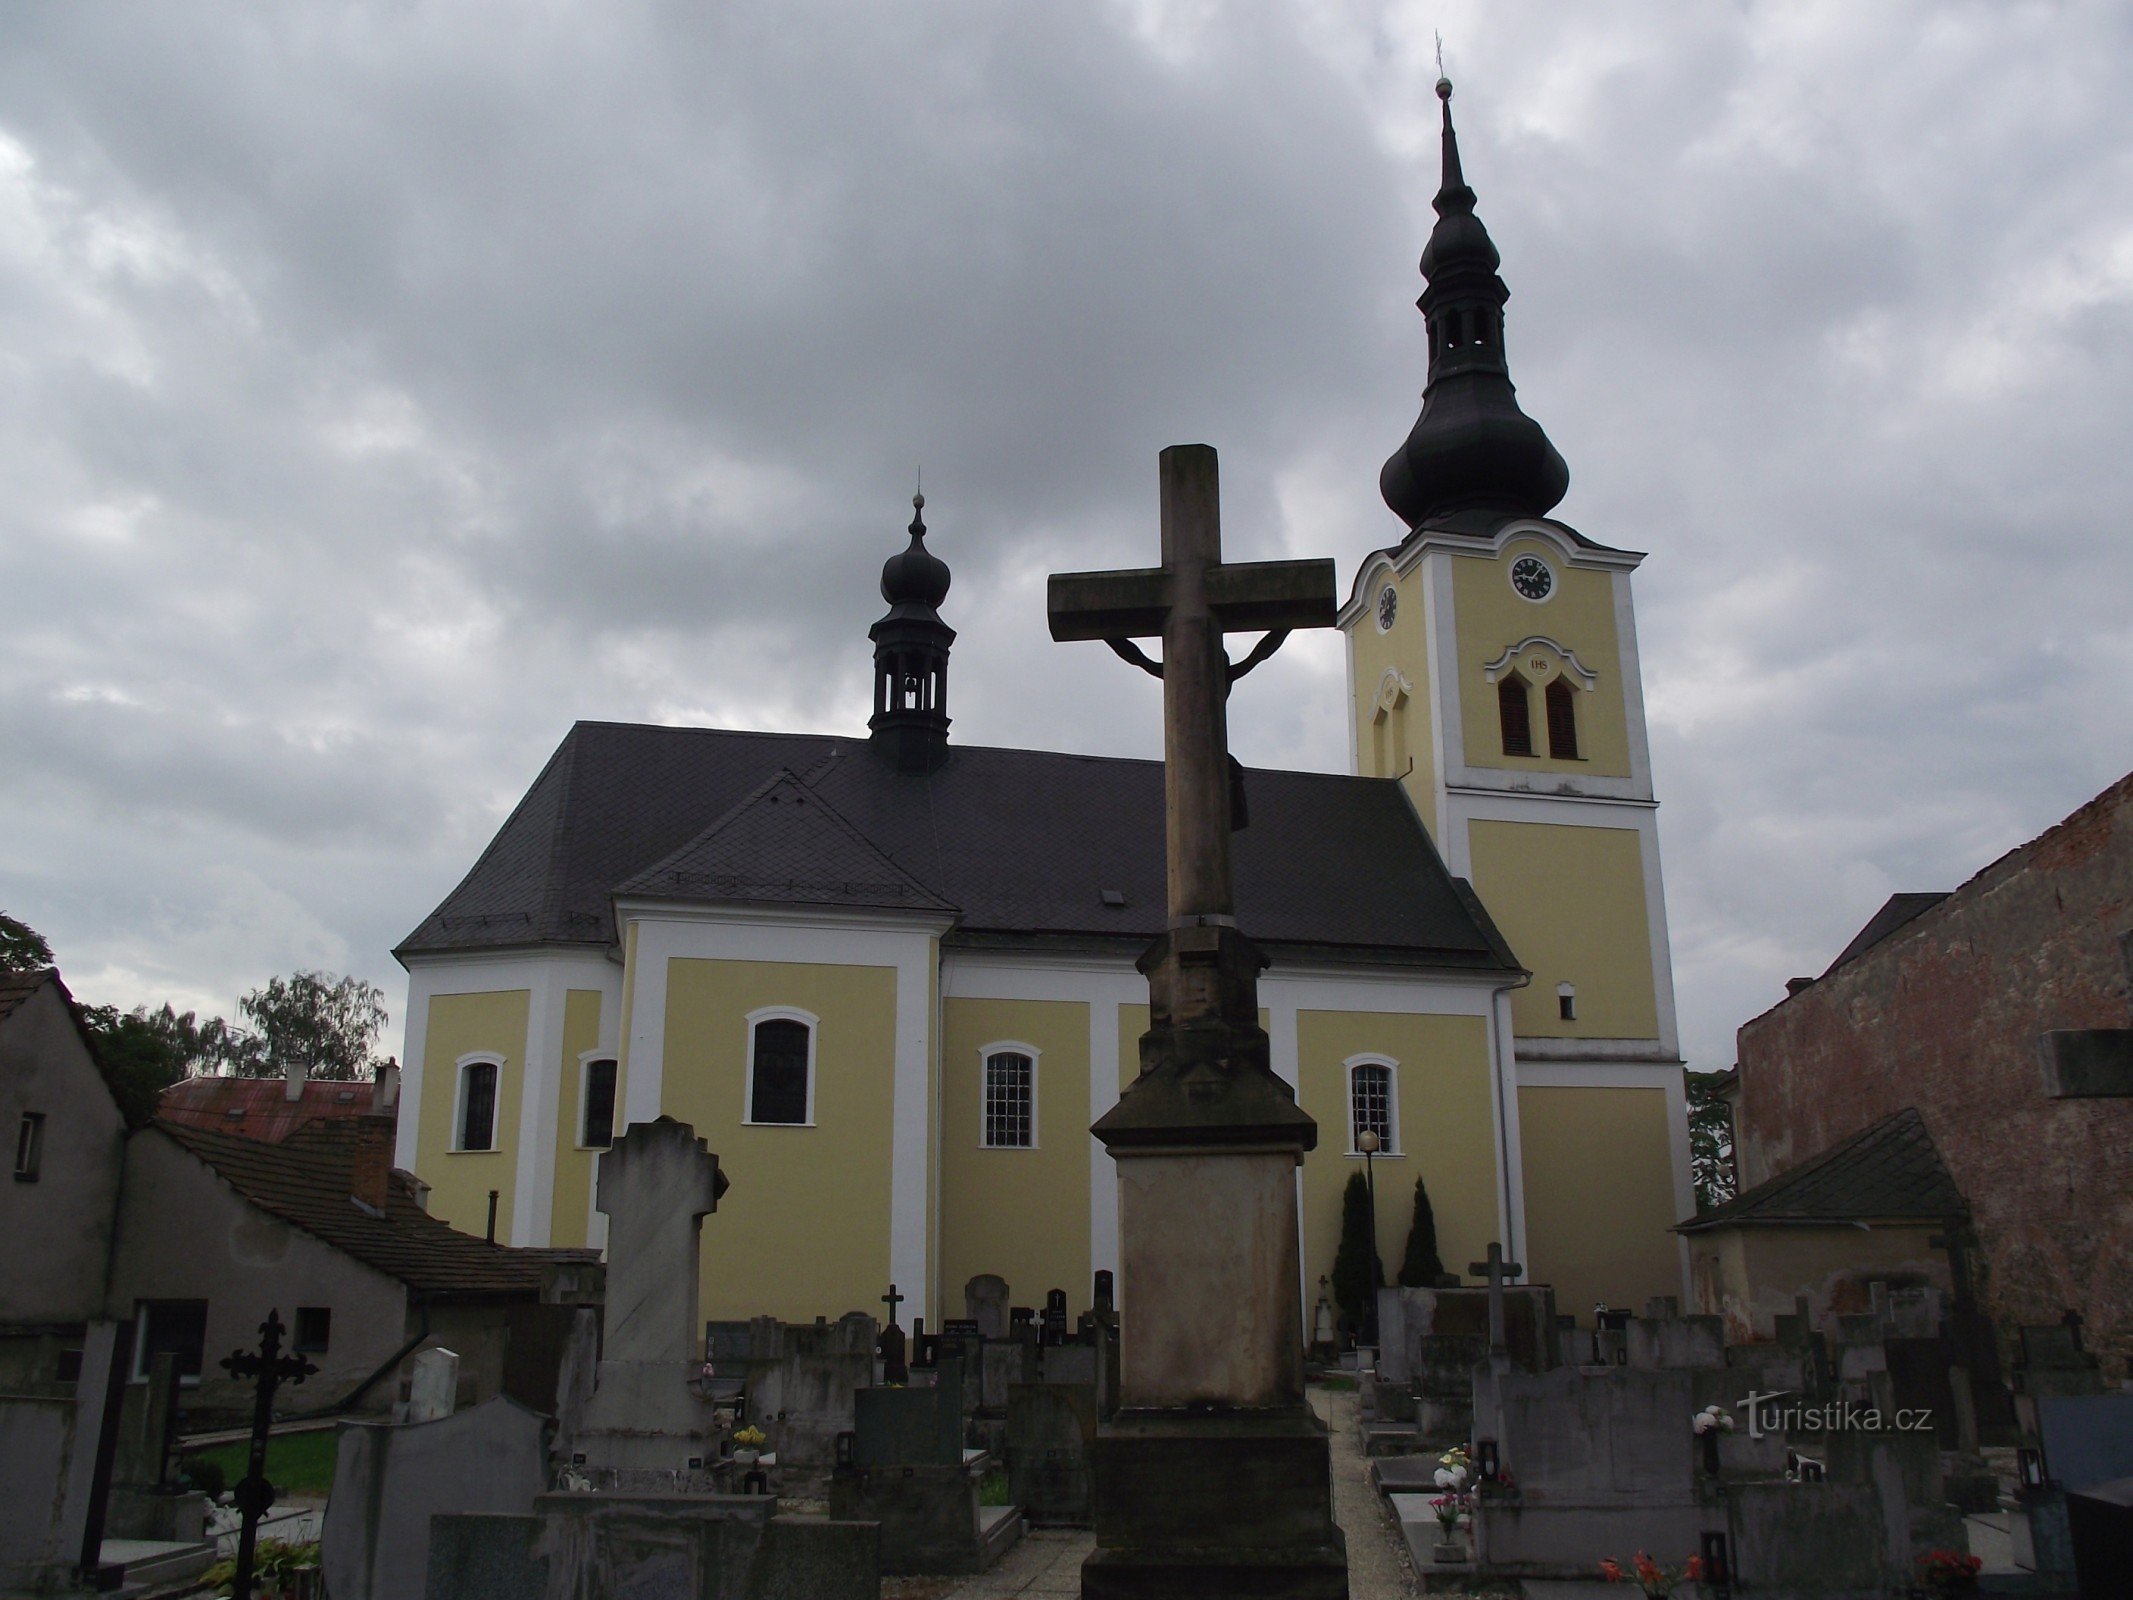 Moravičany: un pueblo lleno de monumentos (no solo pequeños)